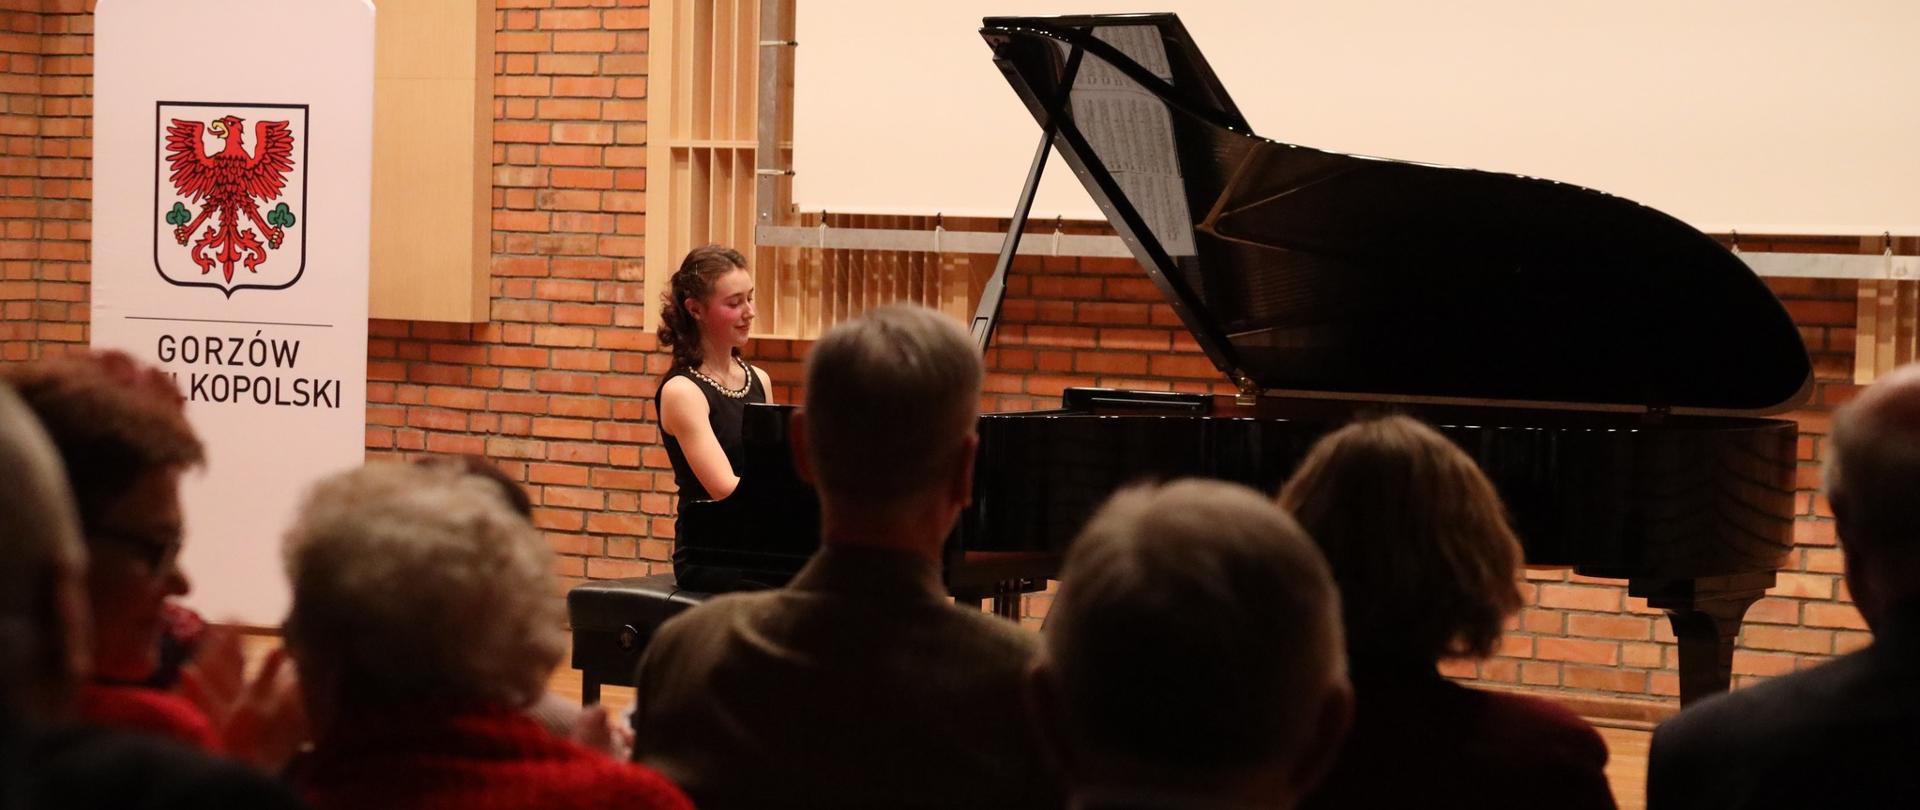 Z lewej strony logo Gorzowa. Na scenie przy fortepianie pianistka. Publiczność obserwująca koncert.